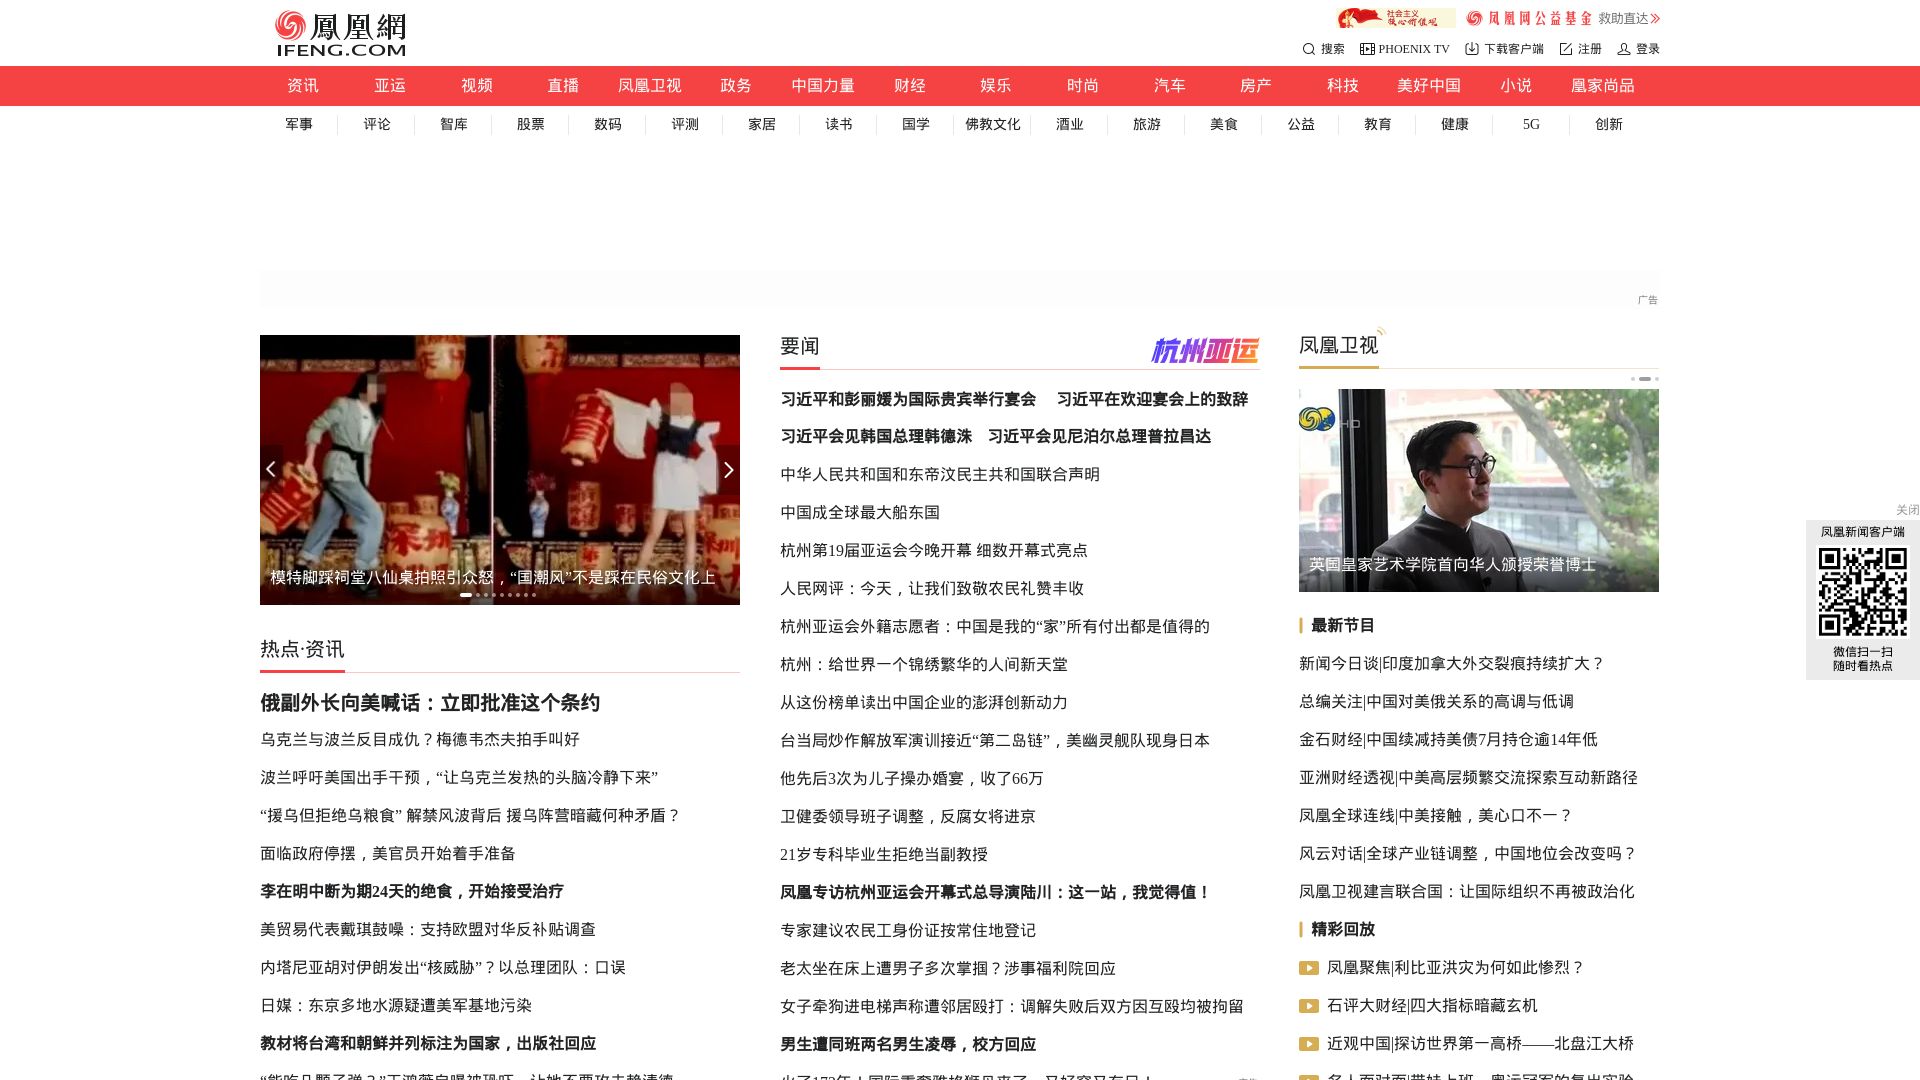 État du site web ifeng.com est   EN LIGNE